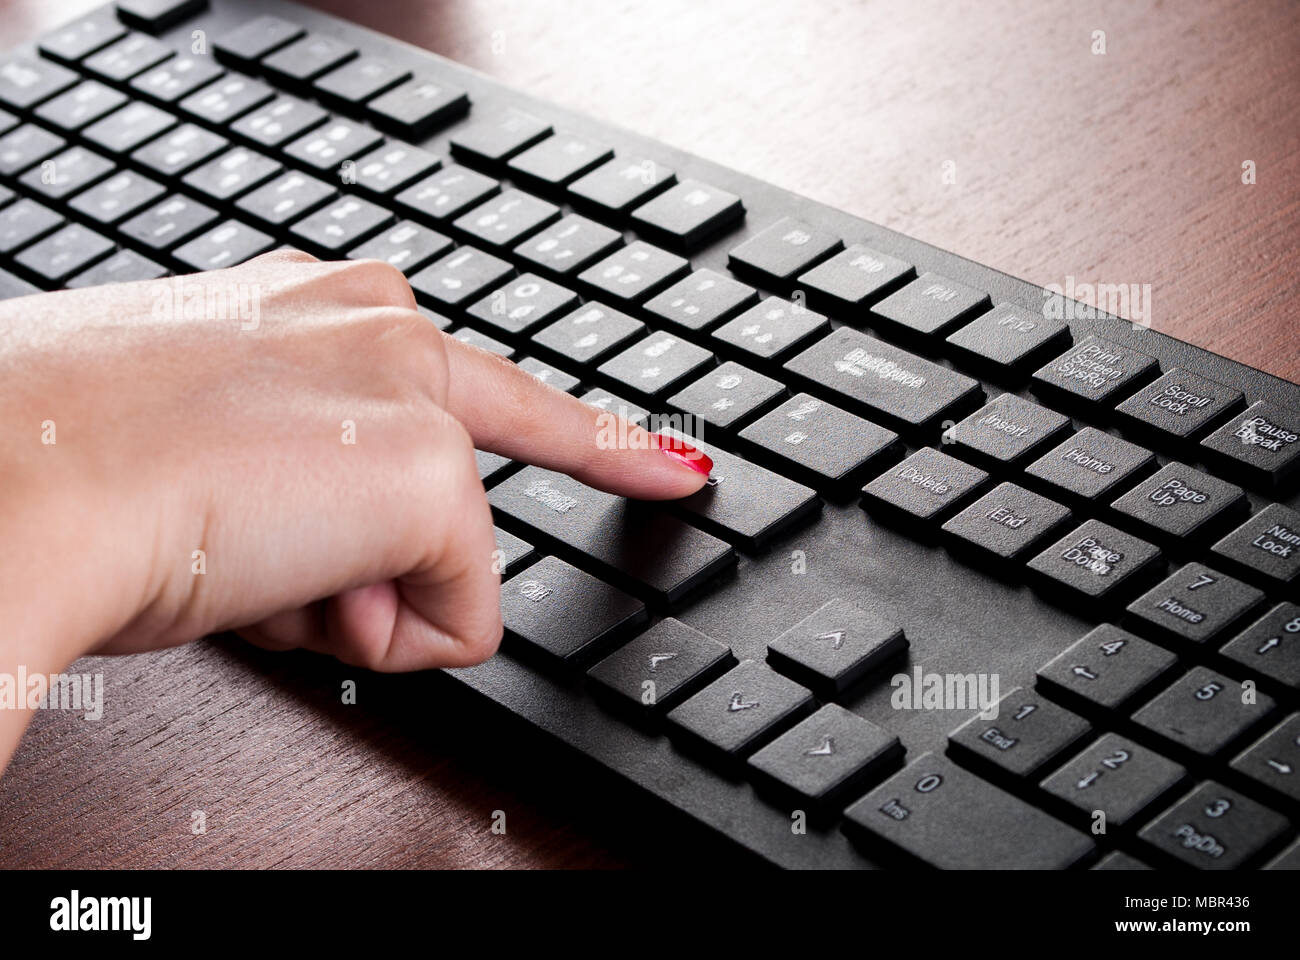 Ragazza dito premere il tasto Invio sulla tastiera del computer sulla scrivania in legno. Close up Foto Stock